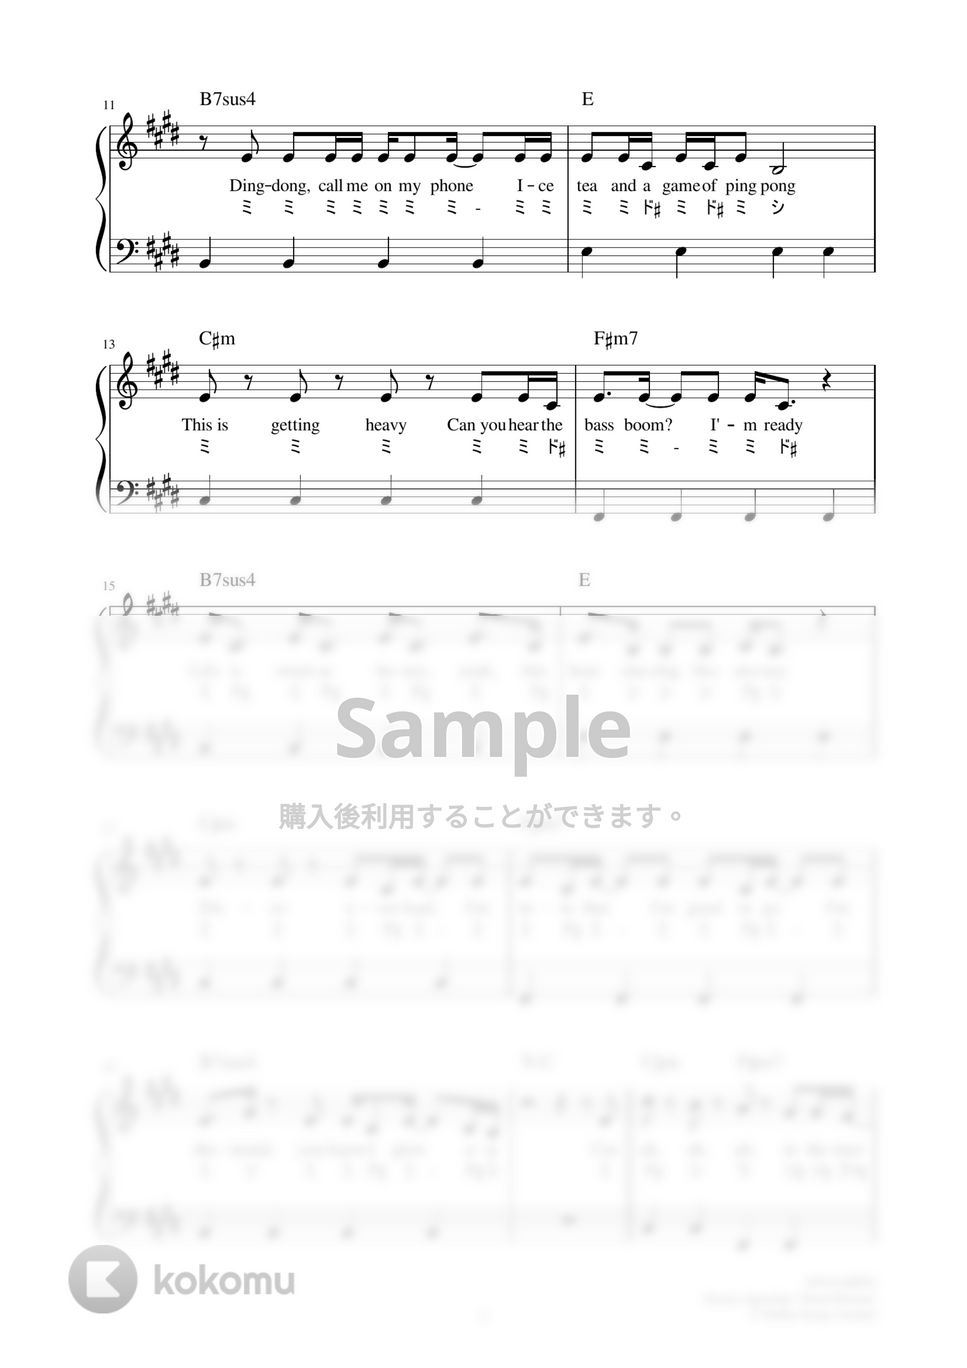 防弾少年団(BTS) - Dynamite (かんたん / 歌詞付き / ドレミ付き / 初心者) by piano.tokyo